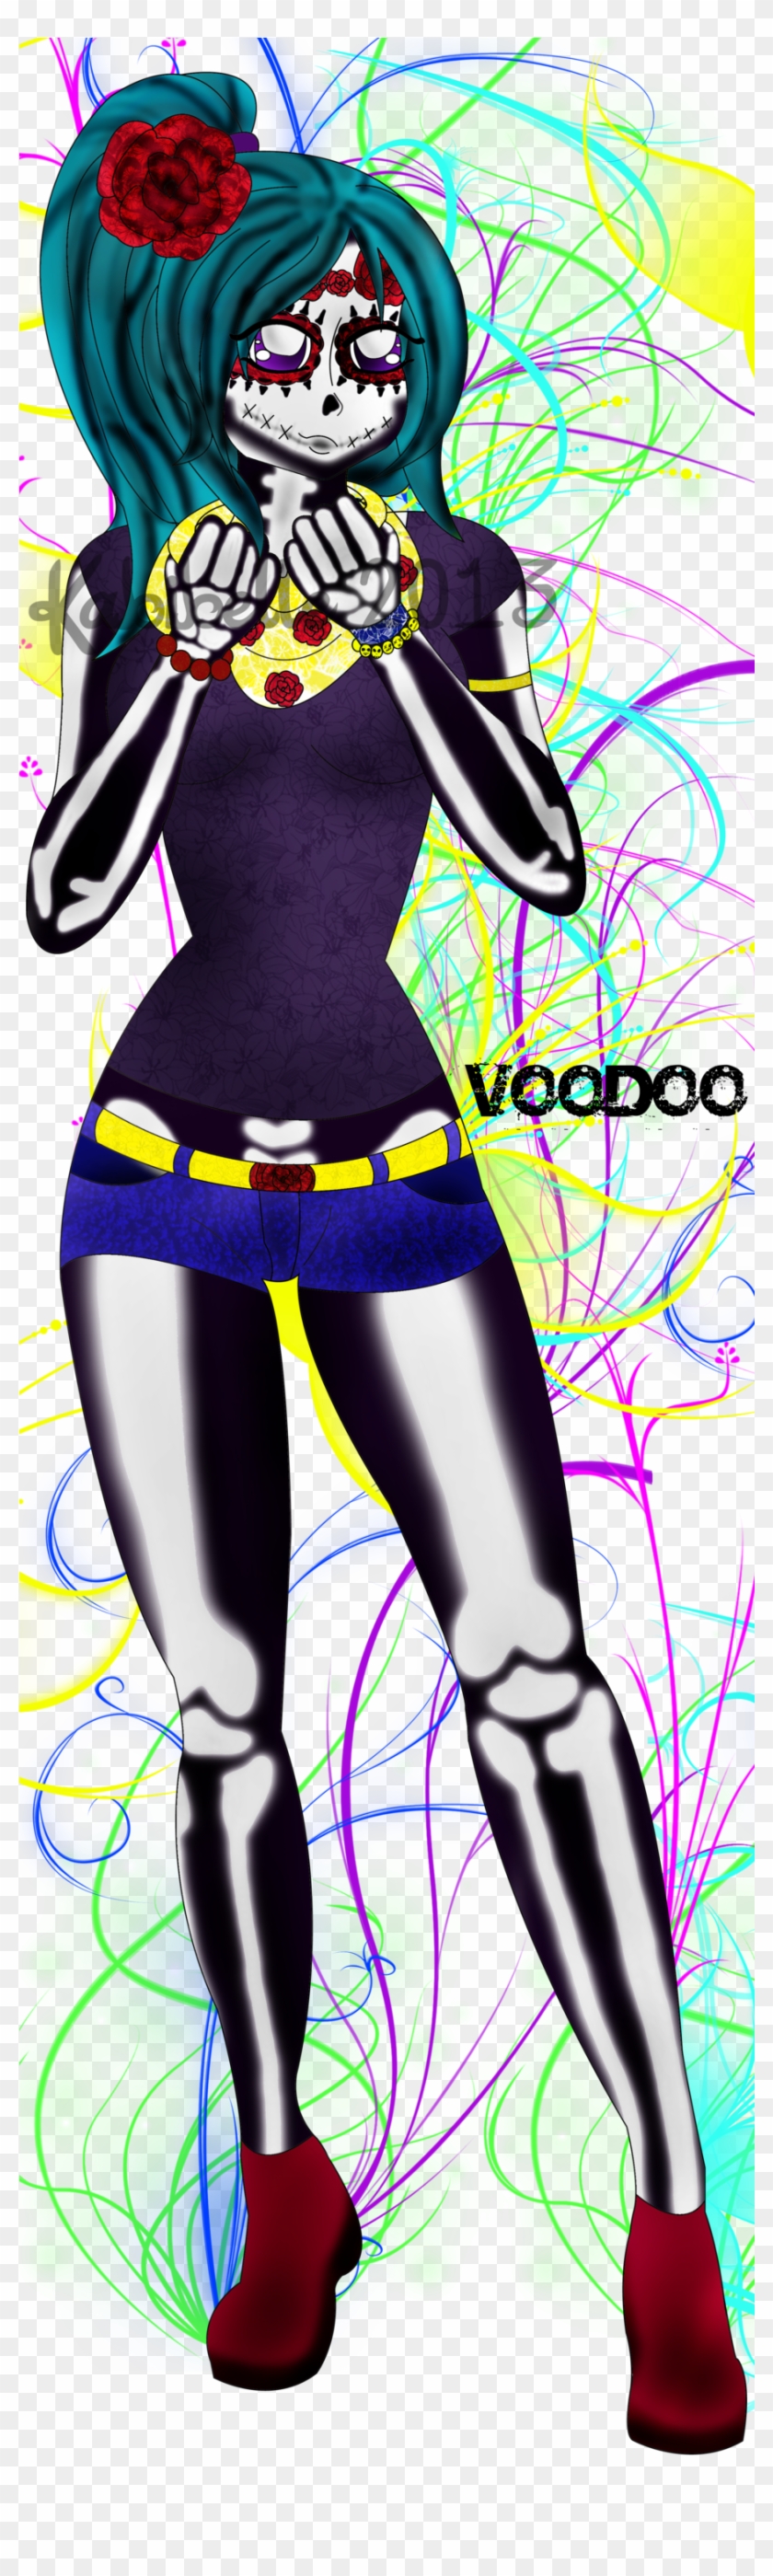 Voodoo By Kabiguan Voodoo By Kabiguan - Visual Arts #830961